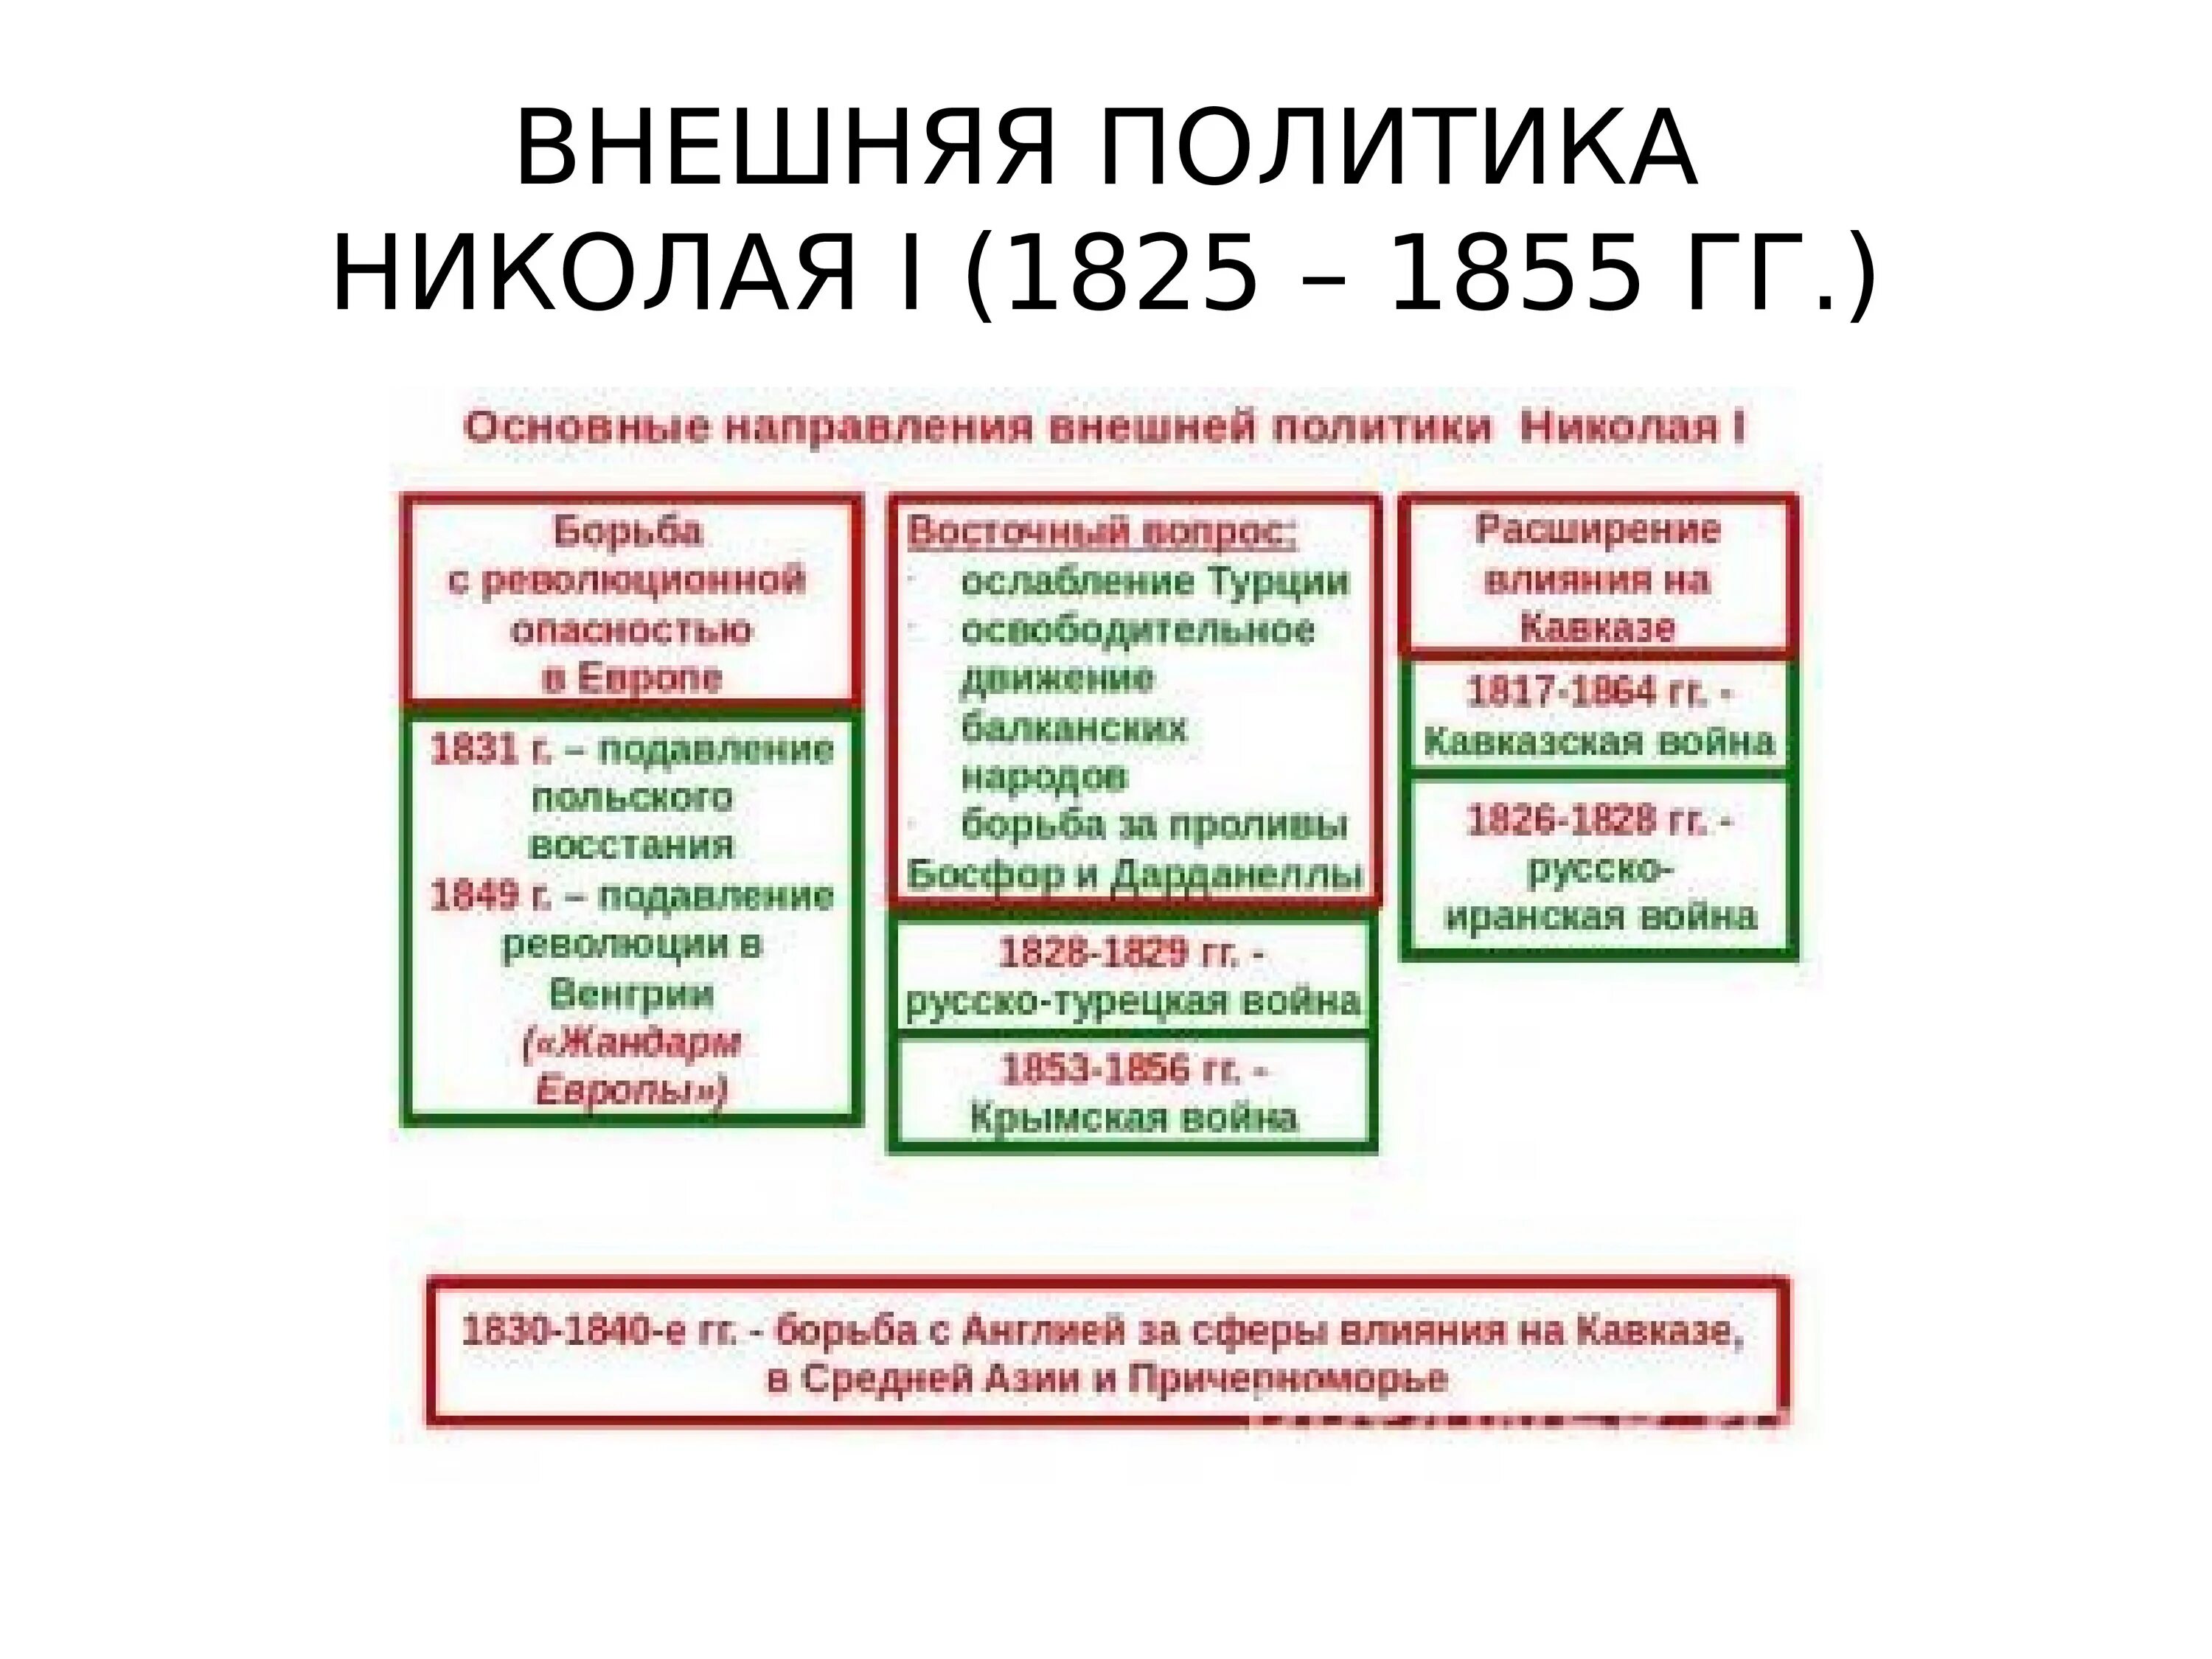 Таблица основные направления внешней политики России в 1825-1855. Основные направления внешней политики Николая второго.